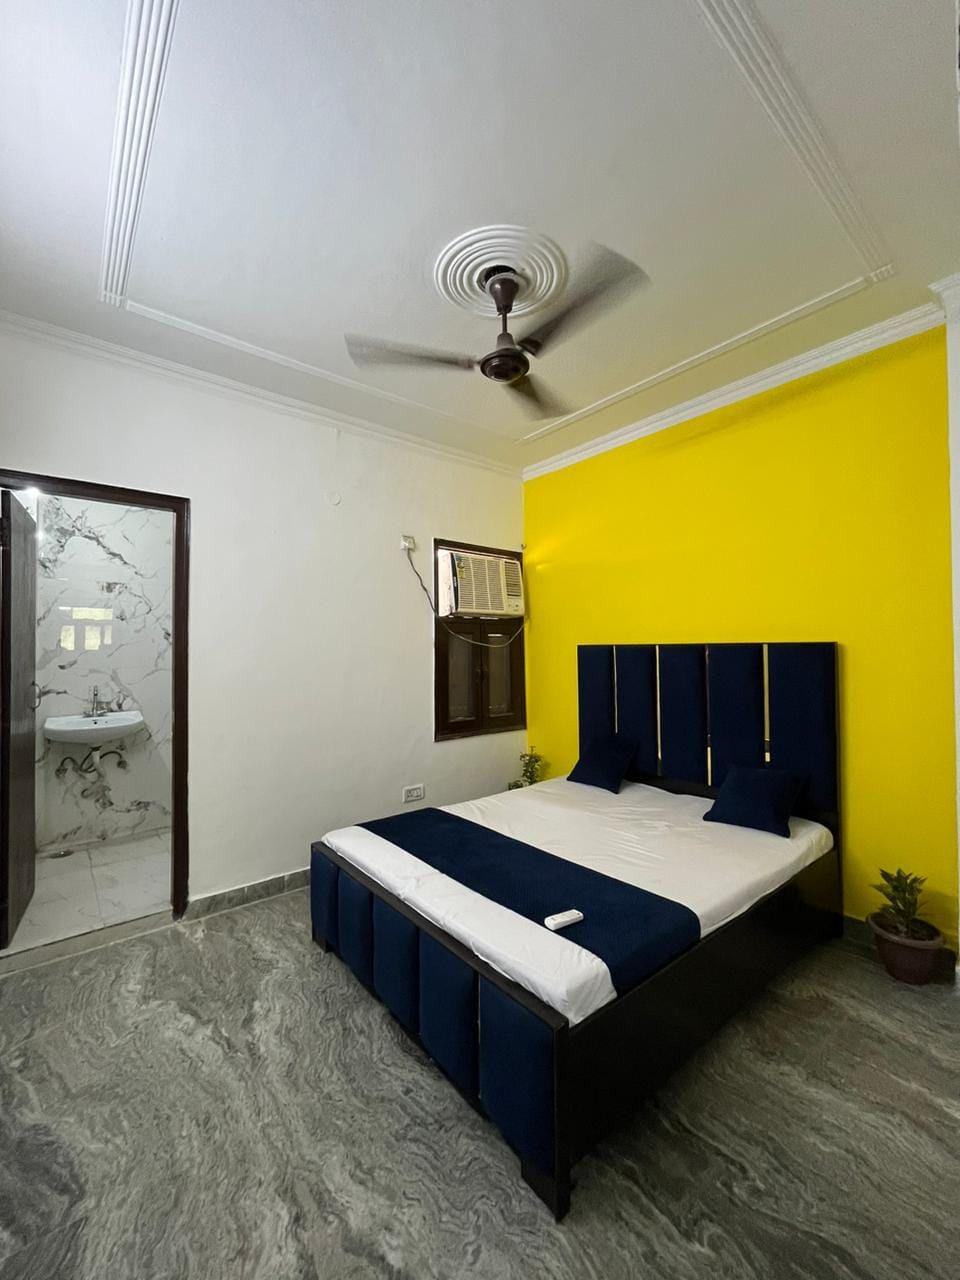 1 Bed/ 1 Bath Rent Apartment/ Flat, Furnished for rent @Saket Nagar Bhopal